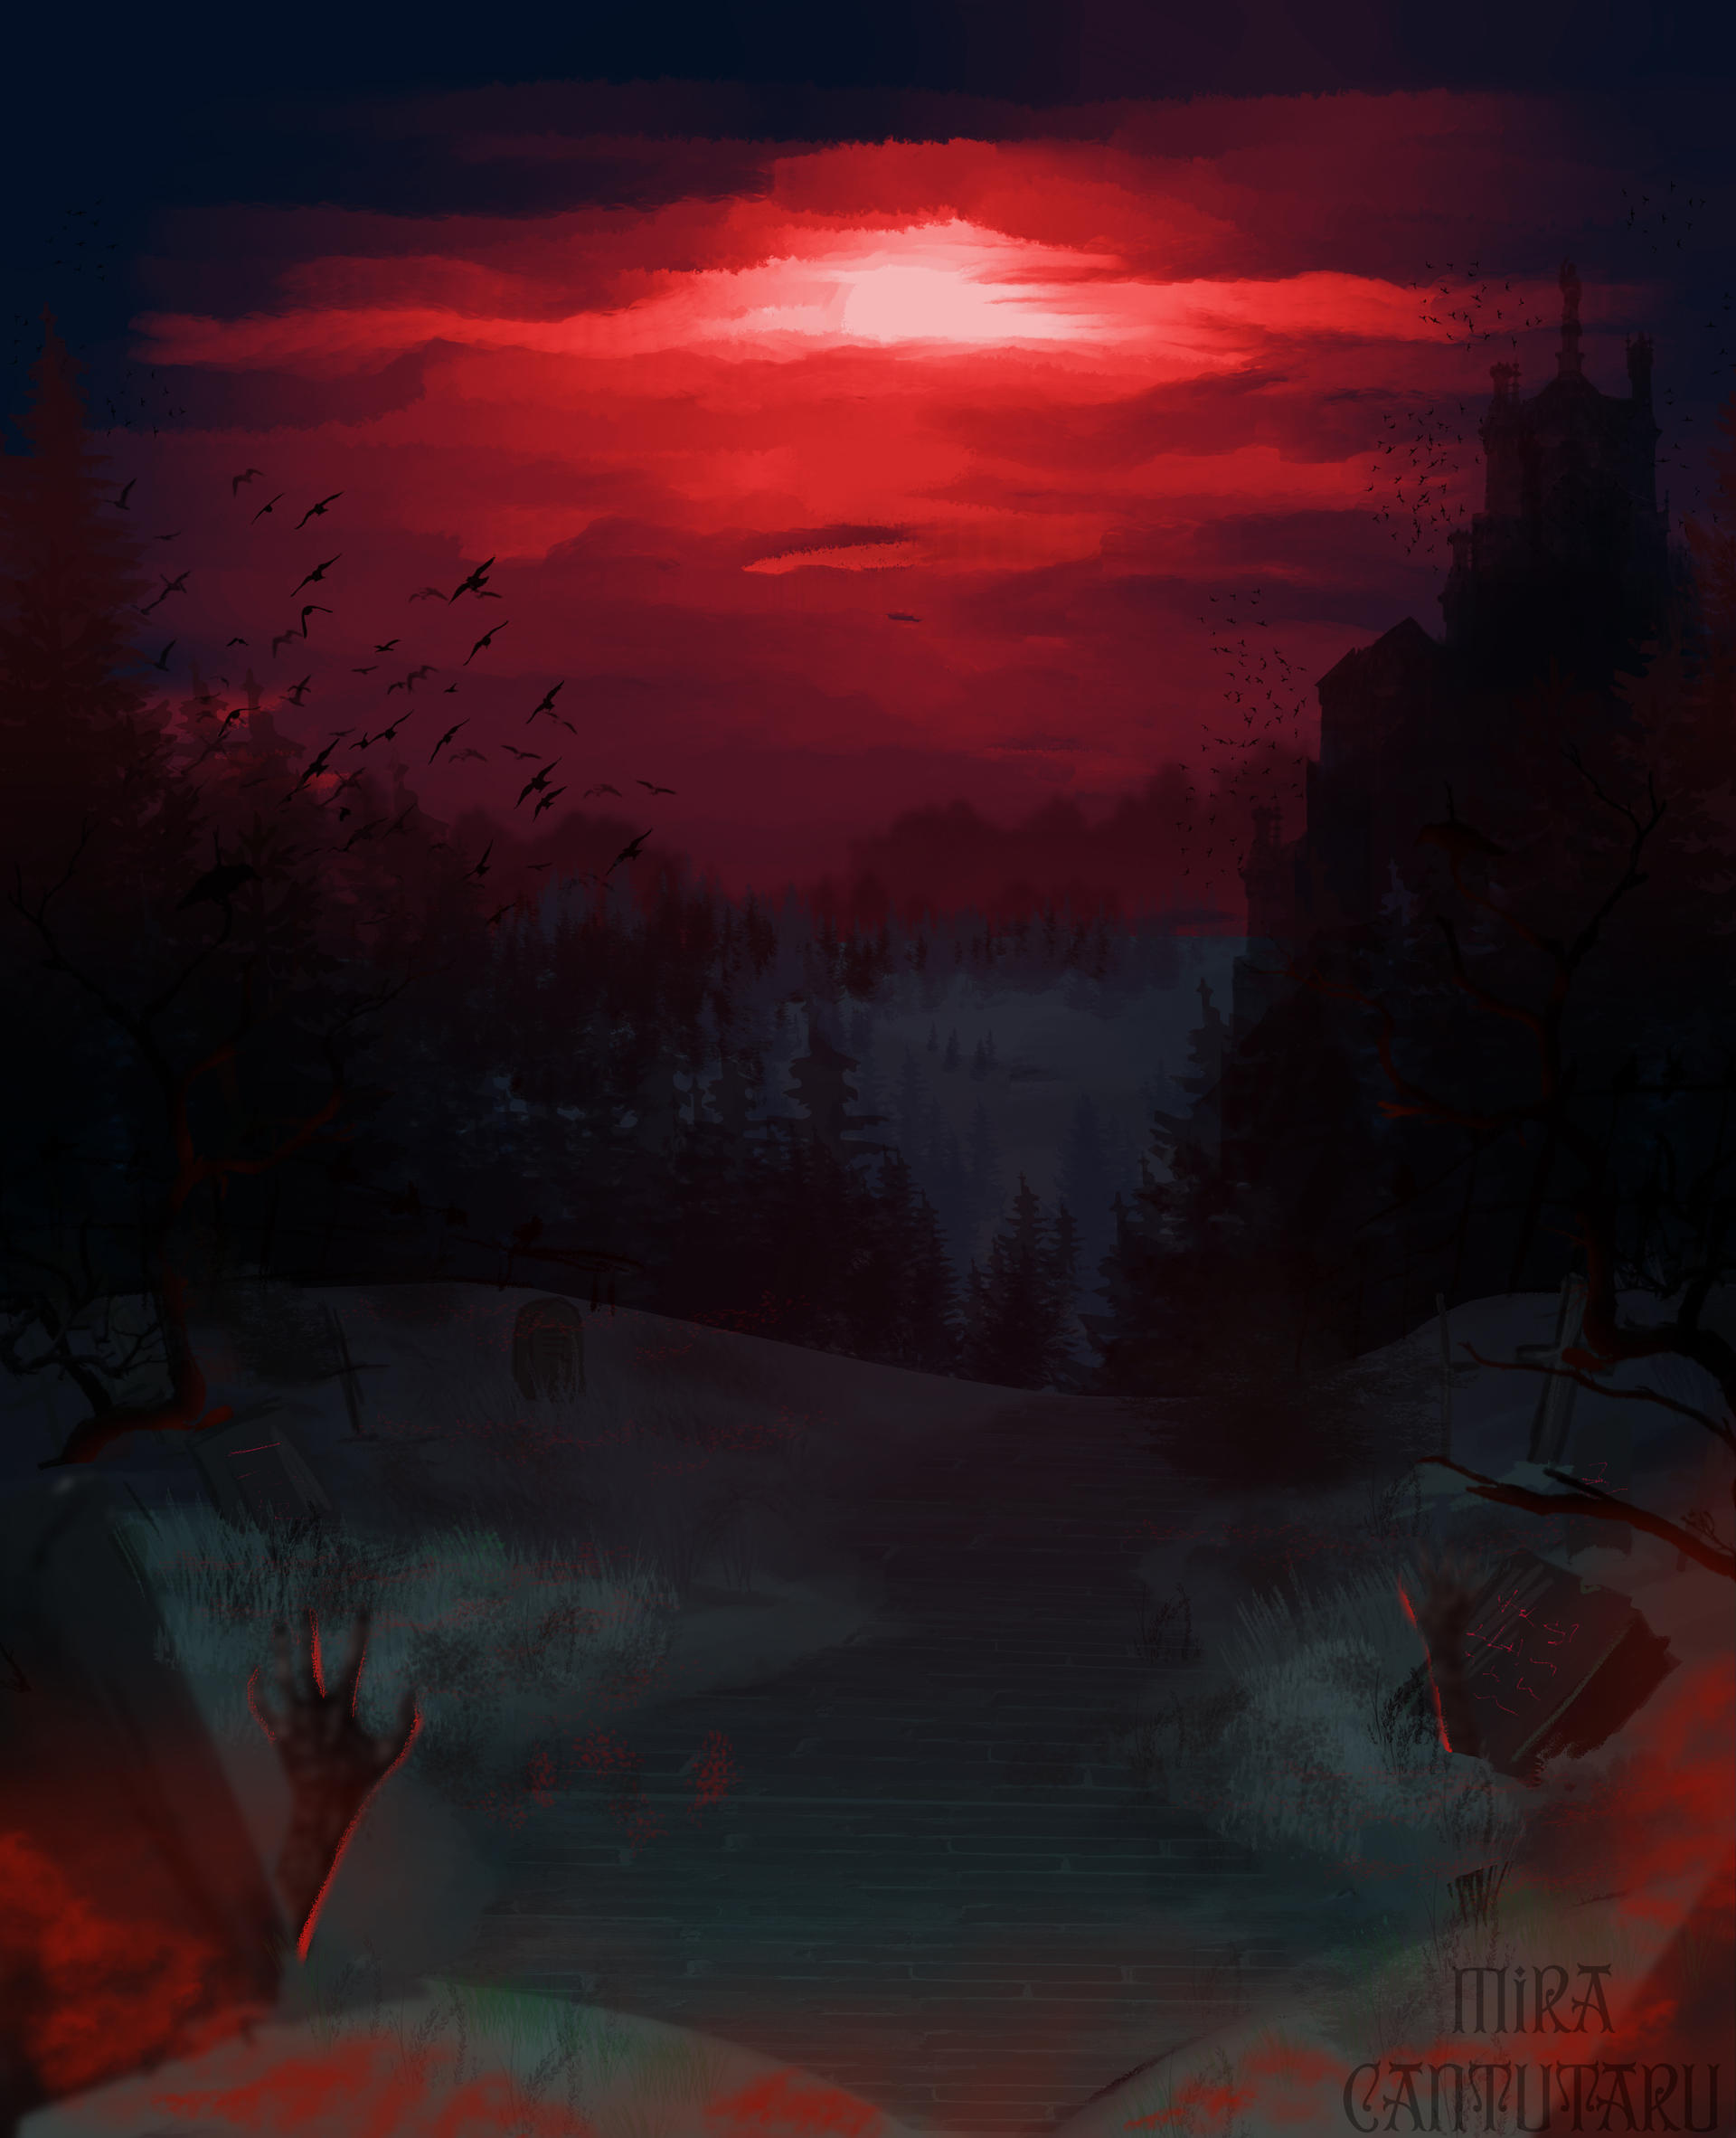 Nền phông trăng máu: Hãy đắm mình trong không gian và thưởng thức vẻ đẹp của trăng máu thông qua bức ảnh nền này. Với màu đỏ ấn tượng, nó sẽ trở thành điểm nhấn và làm lòng bạn sảng khoái.